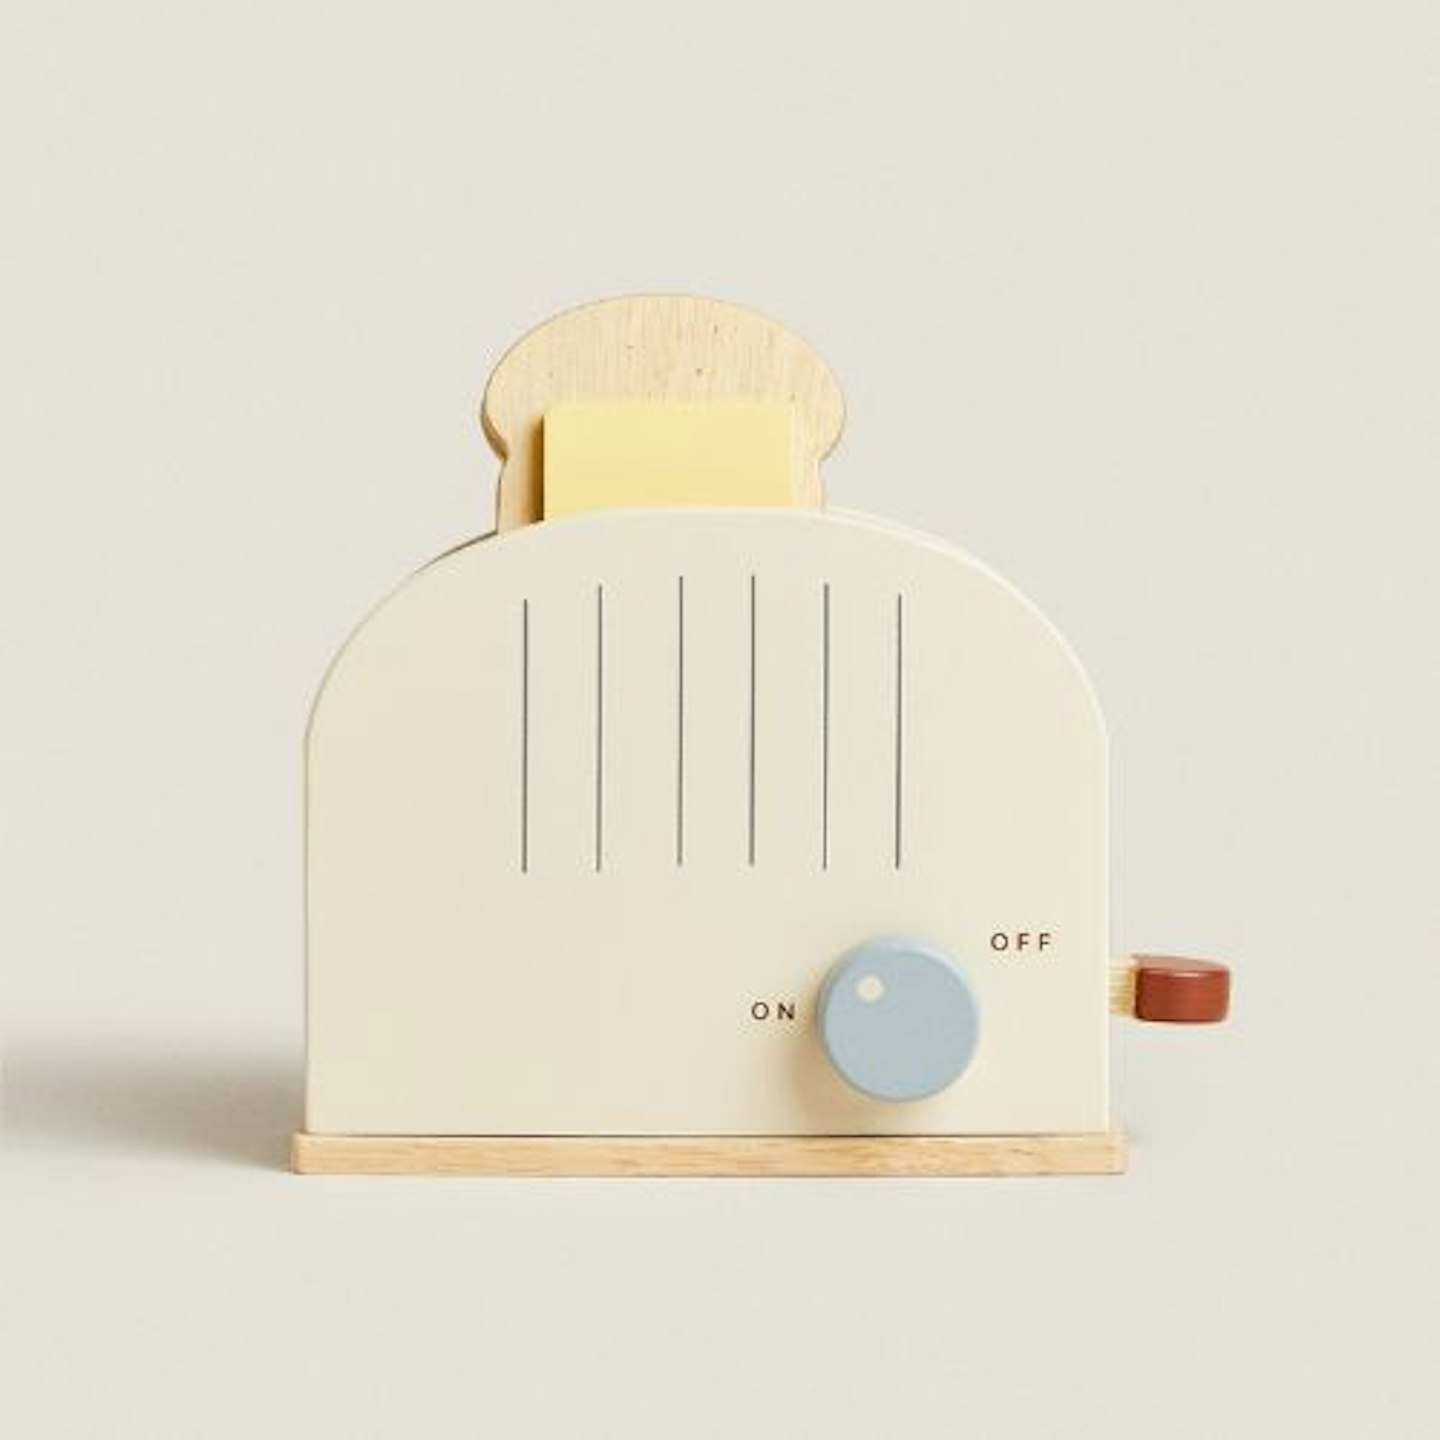 Children's Toy Toaster